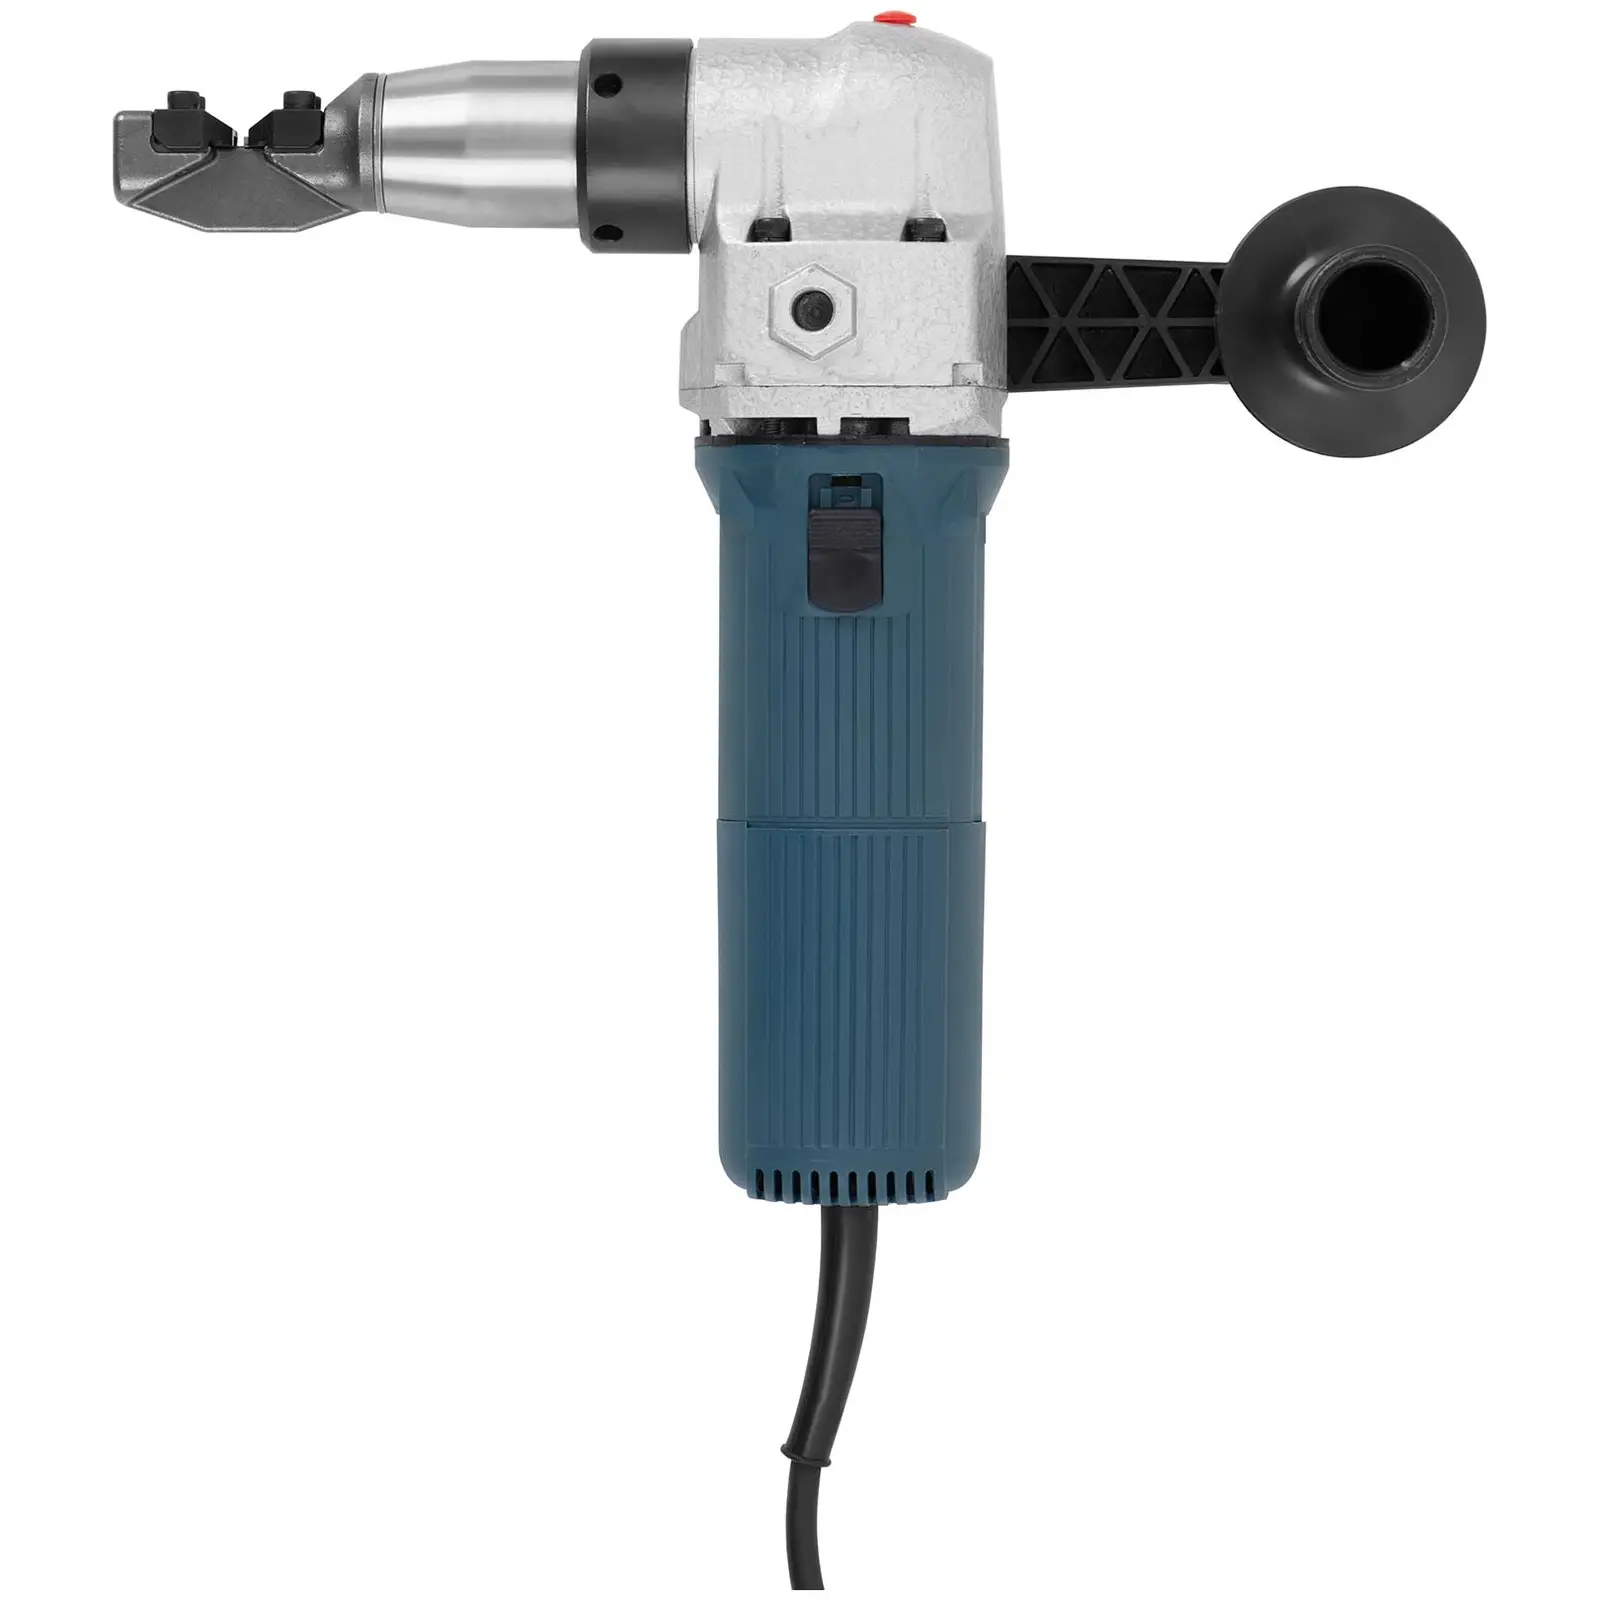 Nibbler - 625 W - 1000 r/min - 4 mm